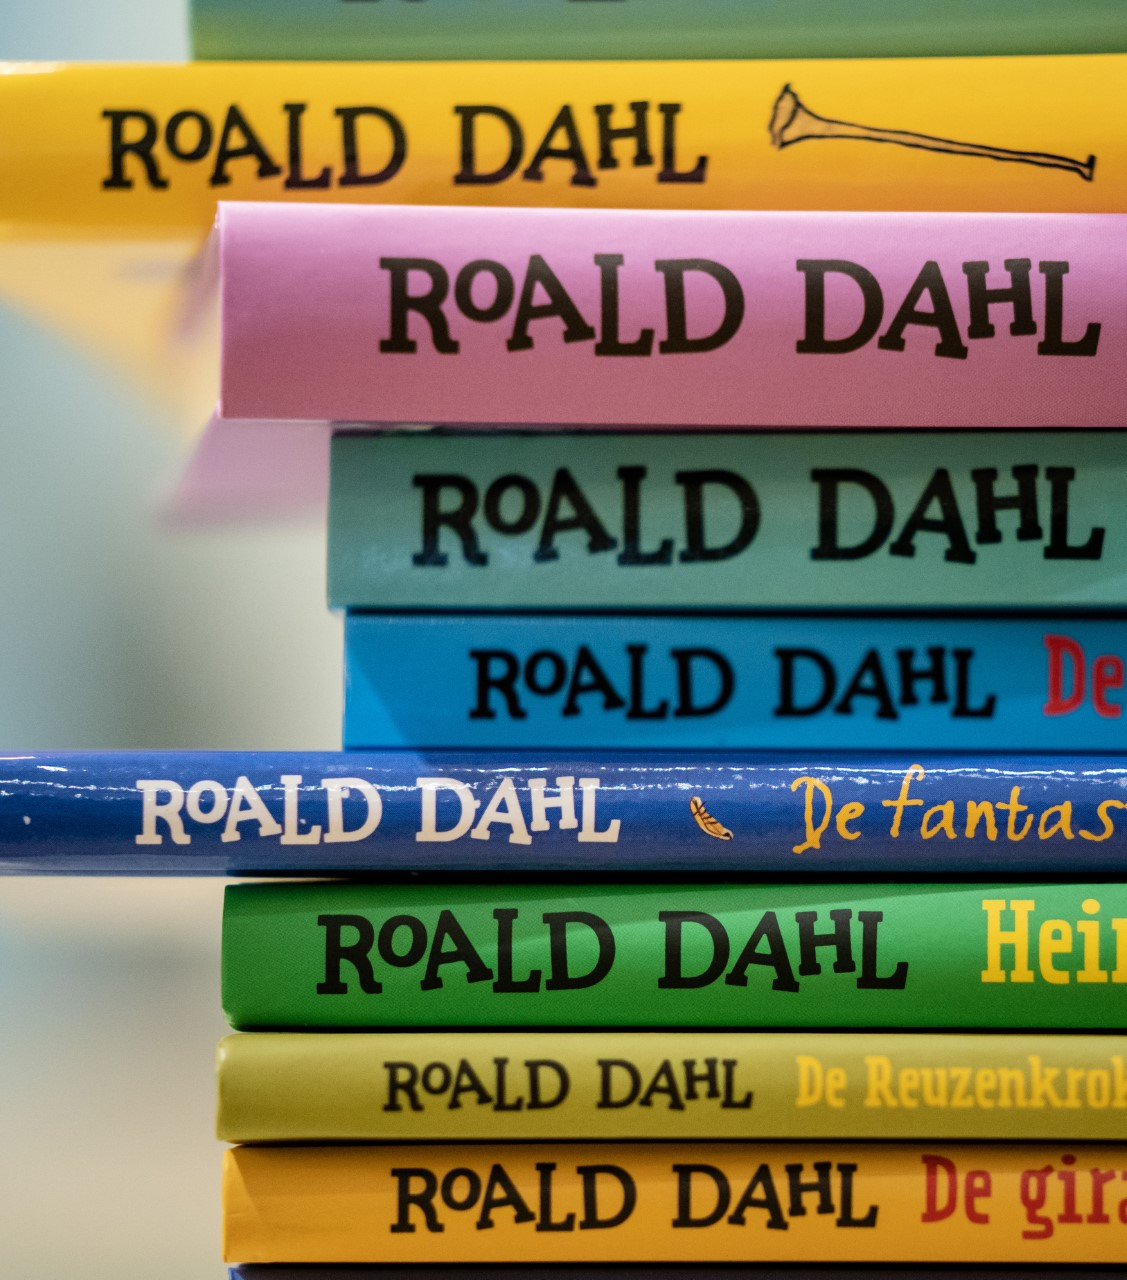 Boeken Roald Dahl worden veranderd, Nederlandse uitgever kritisch